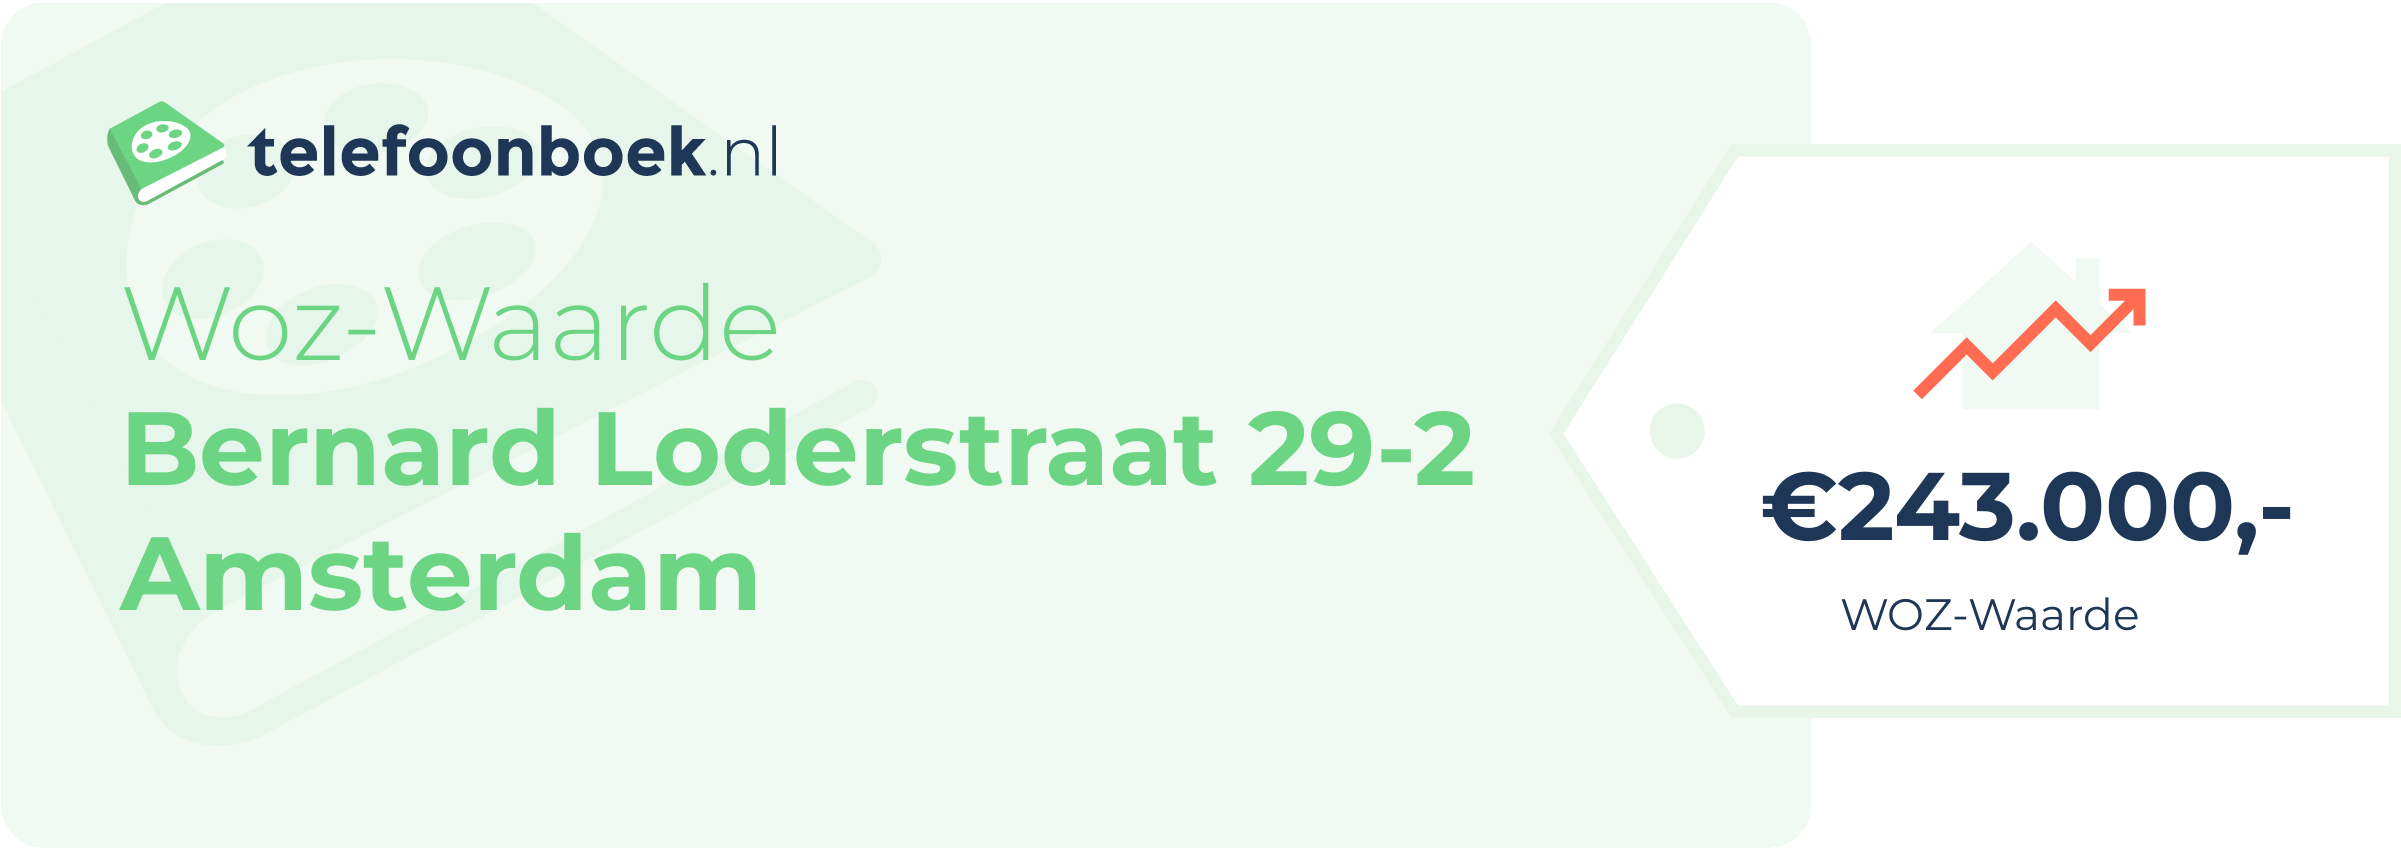 WOZ-waarde Bernard Loderstraat 29-2 Amsterdam